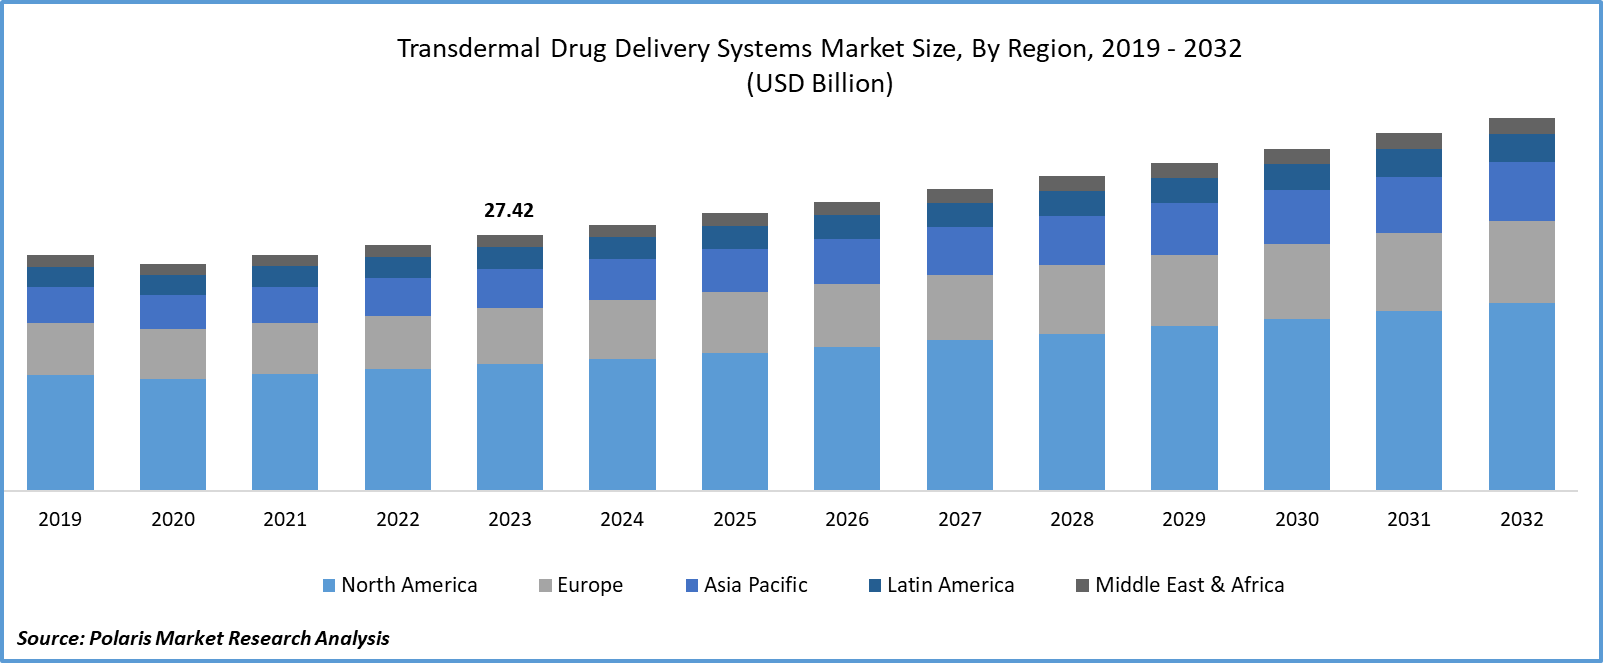 Transdermal Drug Delivery Systems Market Size